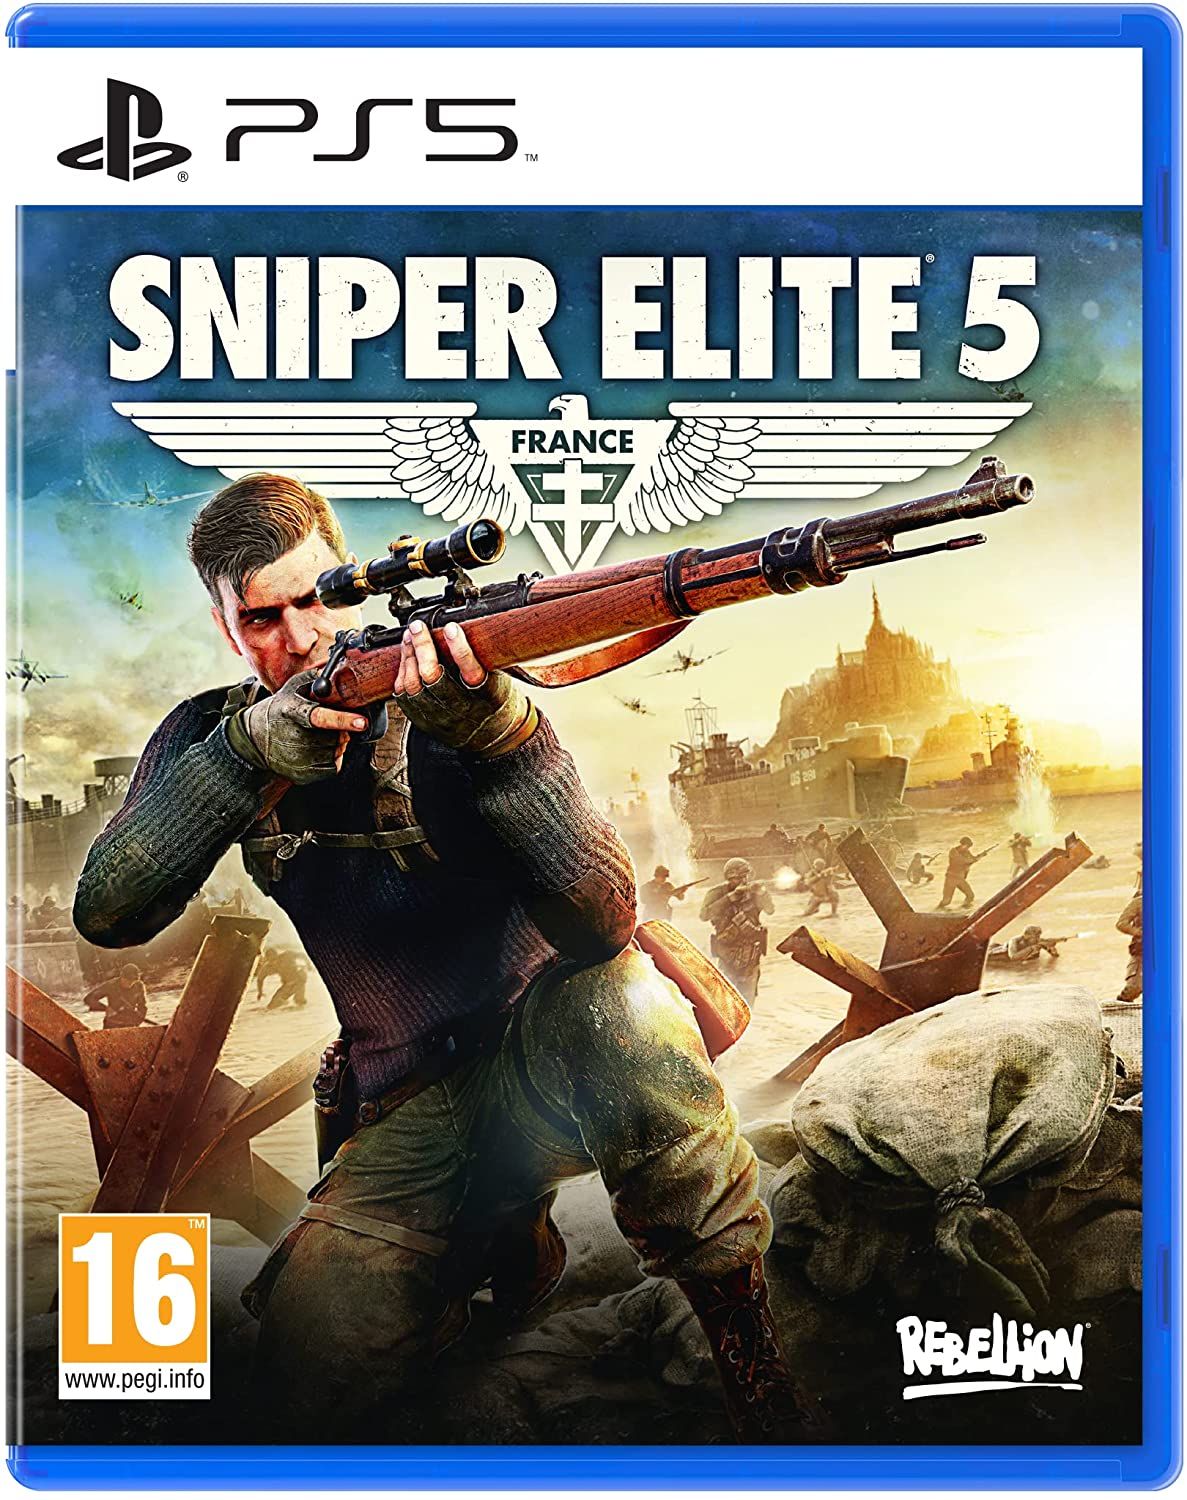 Retrouvez notre TEST : Sniper Elite 5